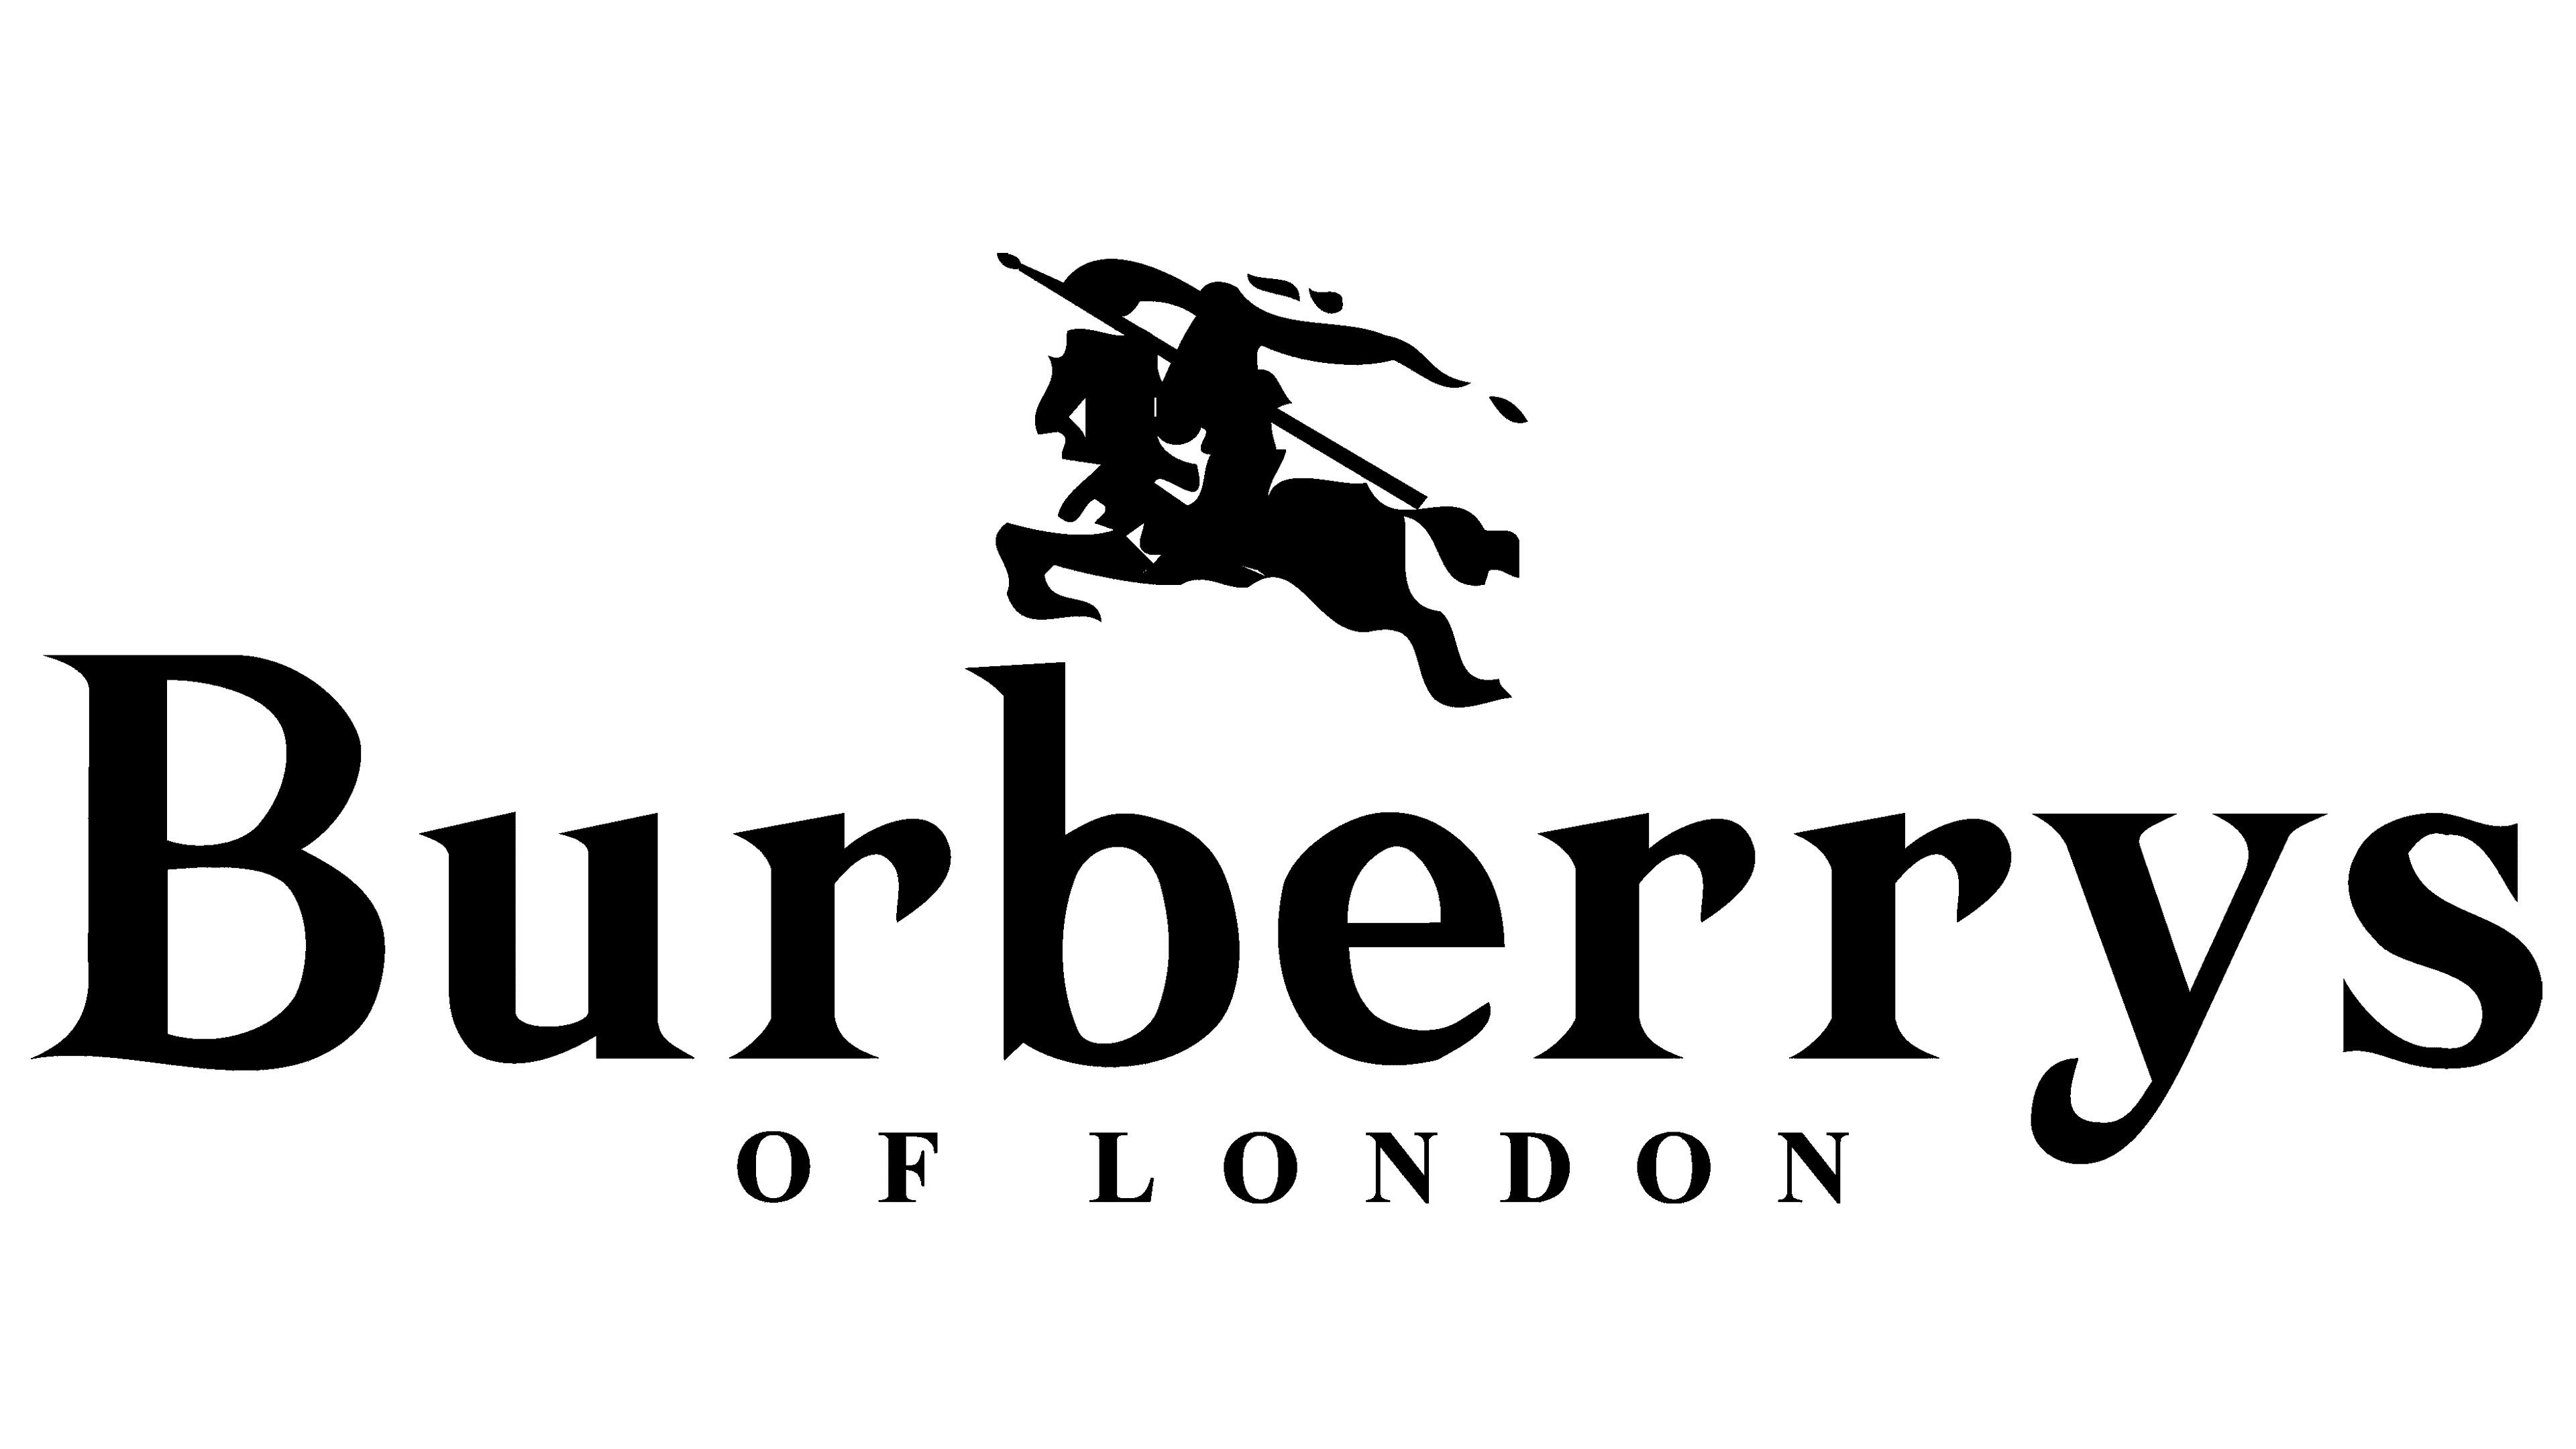 Burberry Labels  Vintage labels, Vintage tags, Vintage logo design